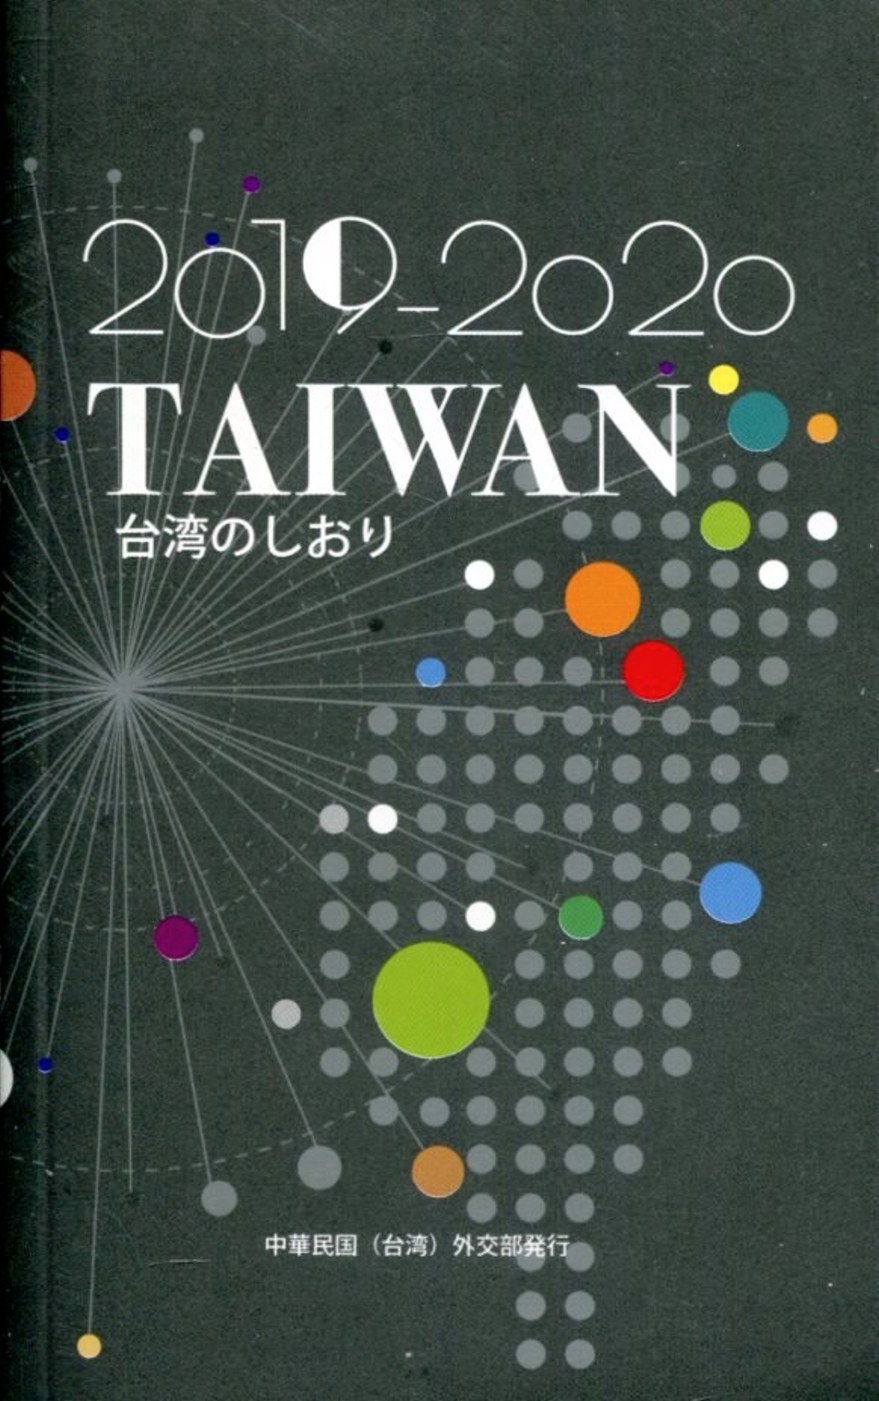 2019-2020台灣一瞥 日文